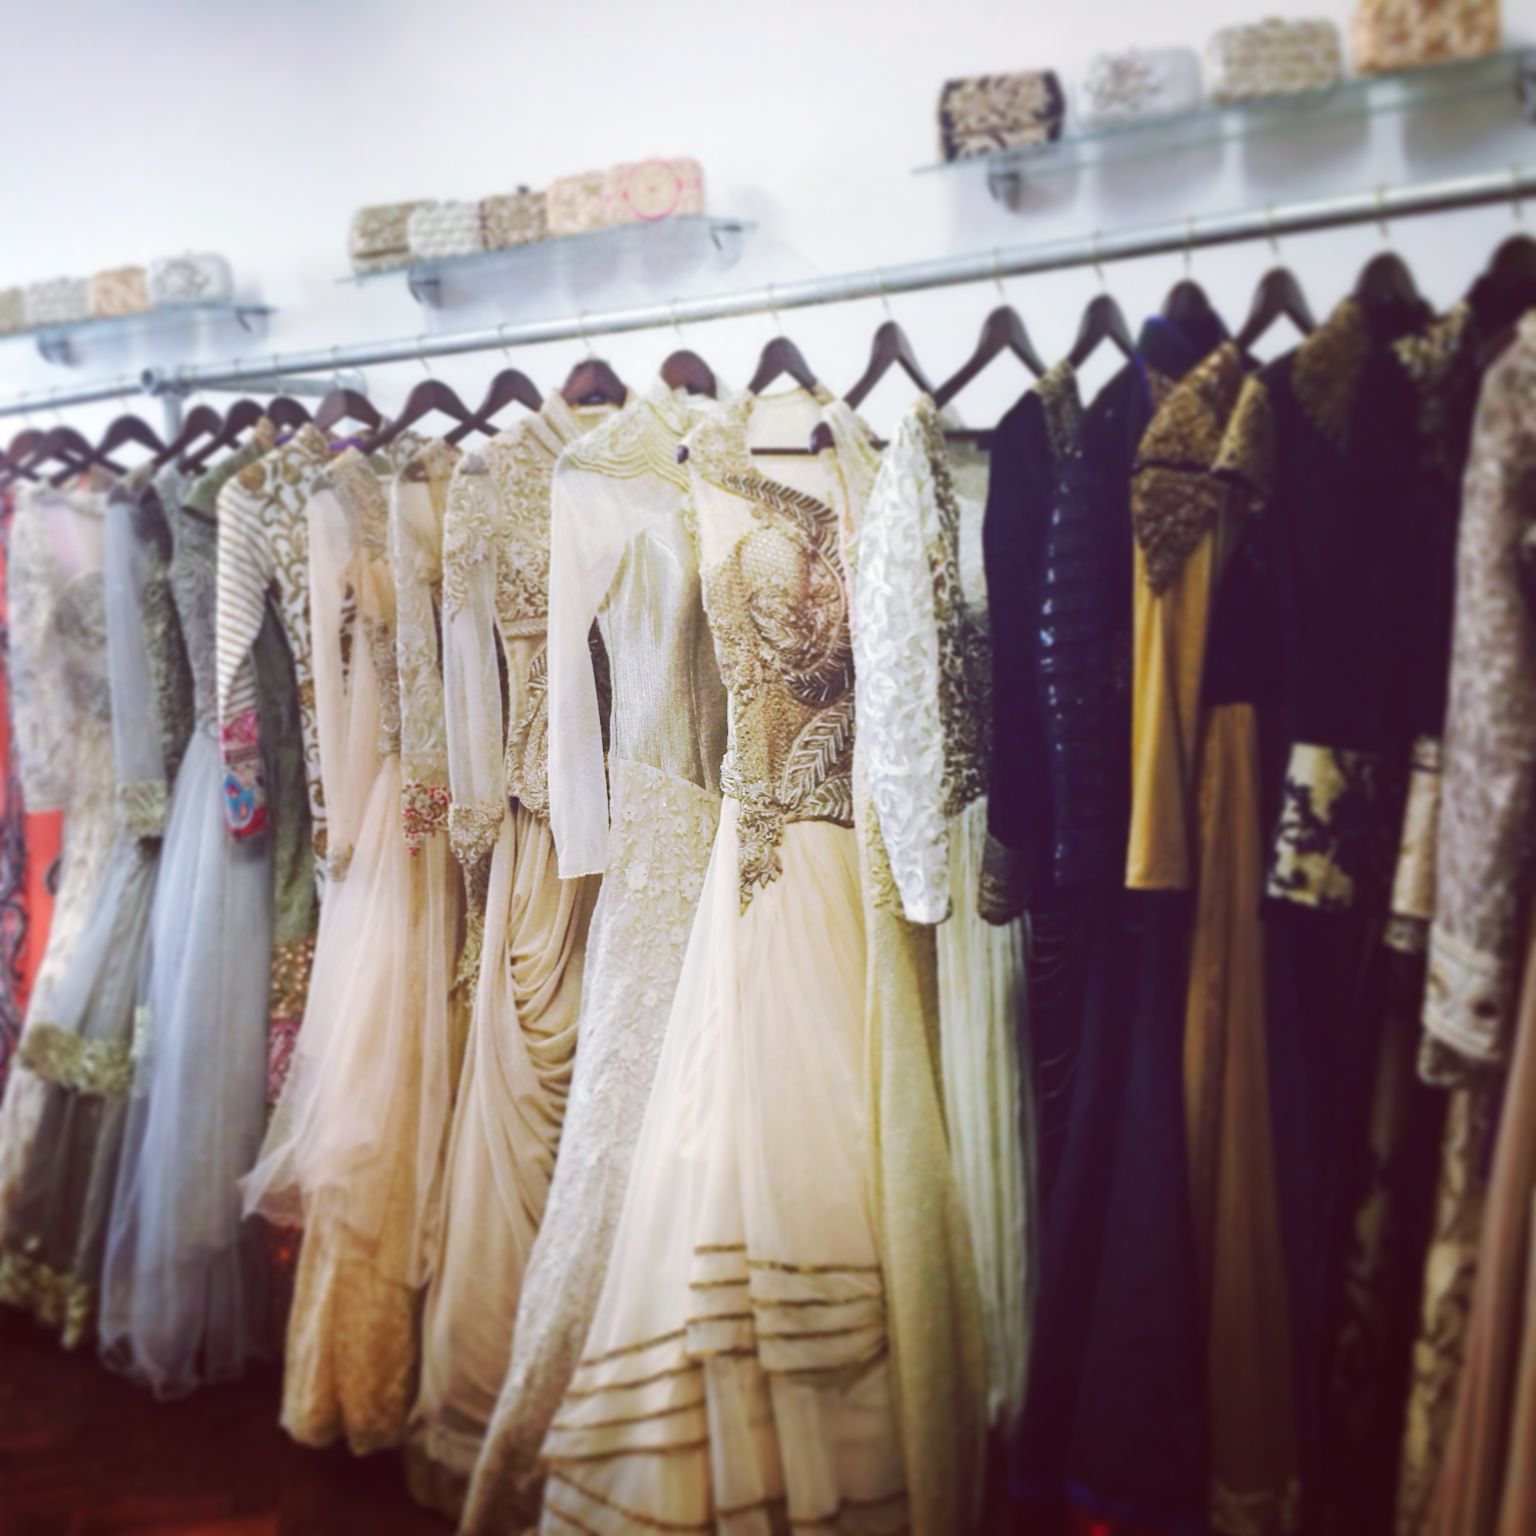 Bridal Shop Clothing Rail | My Shop | Pinterest | Bridal boutique ...